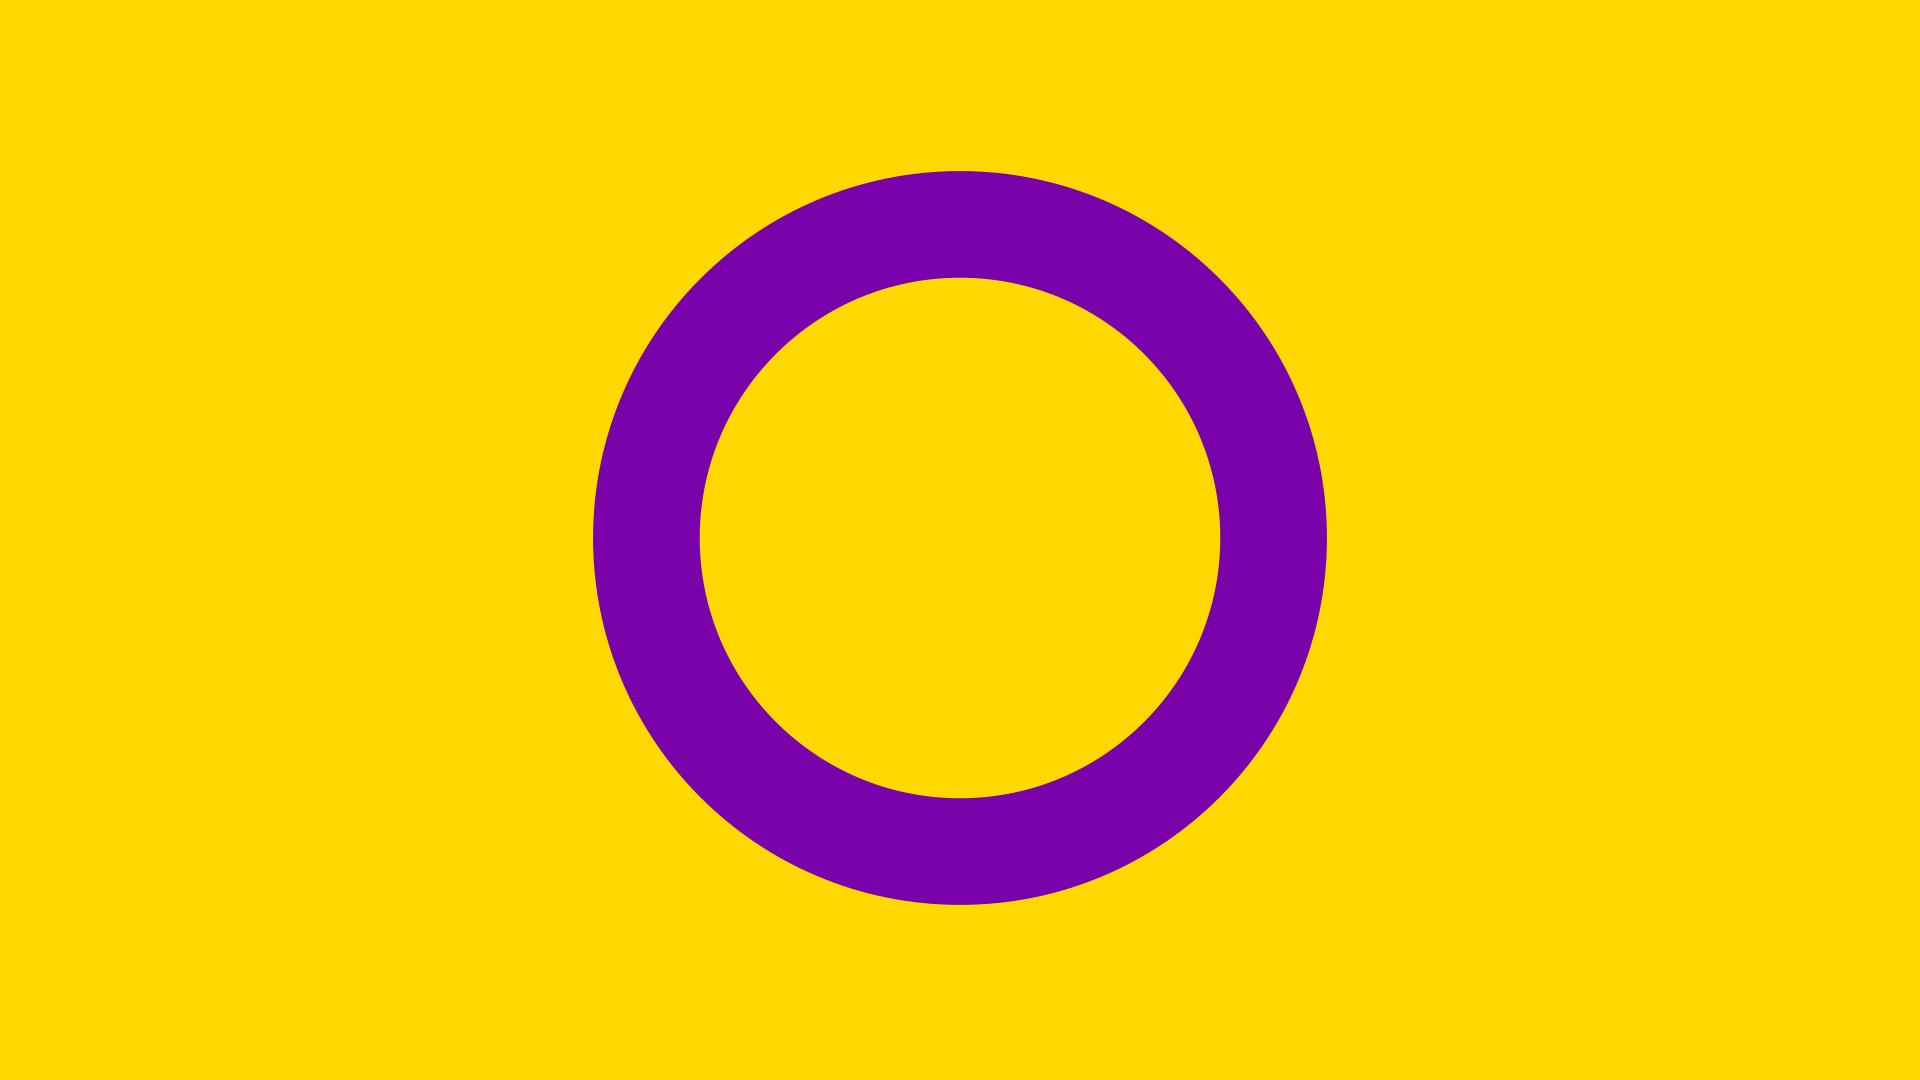 Interflagge - Flagge für intersexuelle / intergeschlechtliche Menschen - Inter*Pride